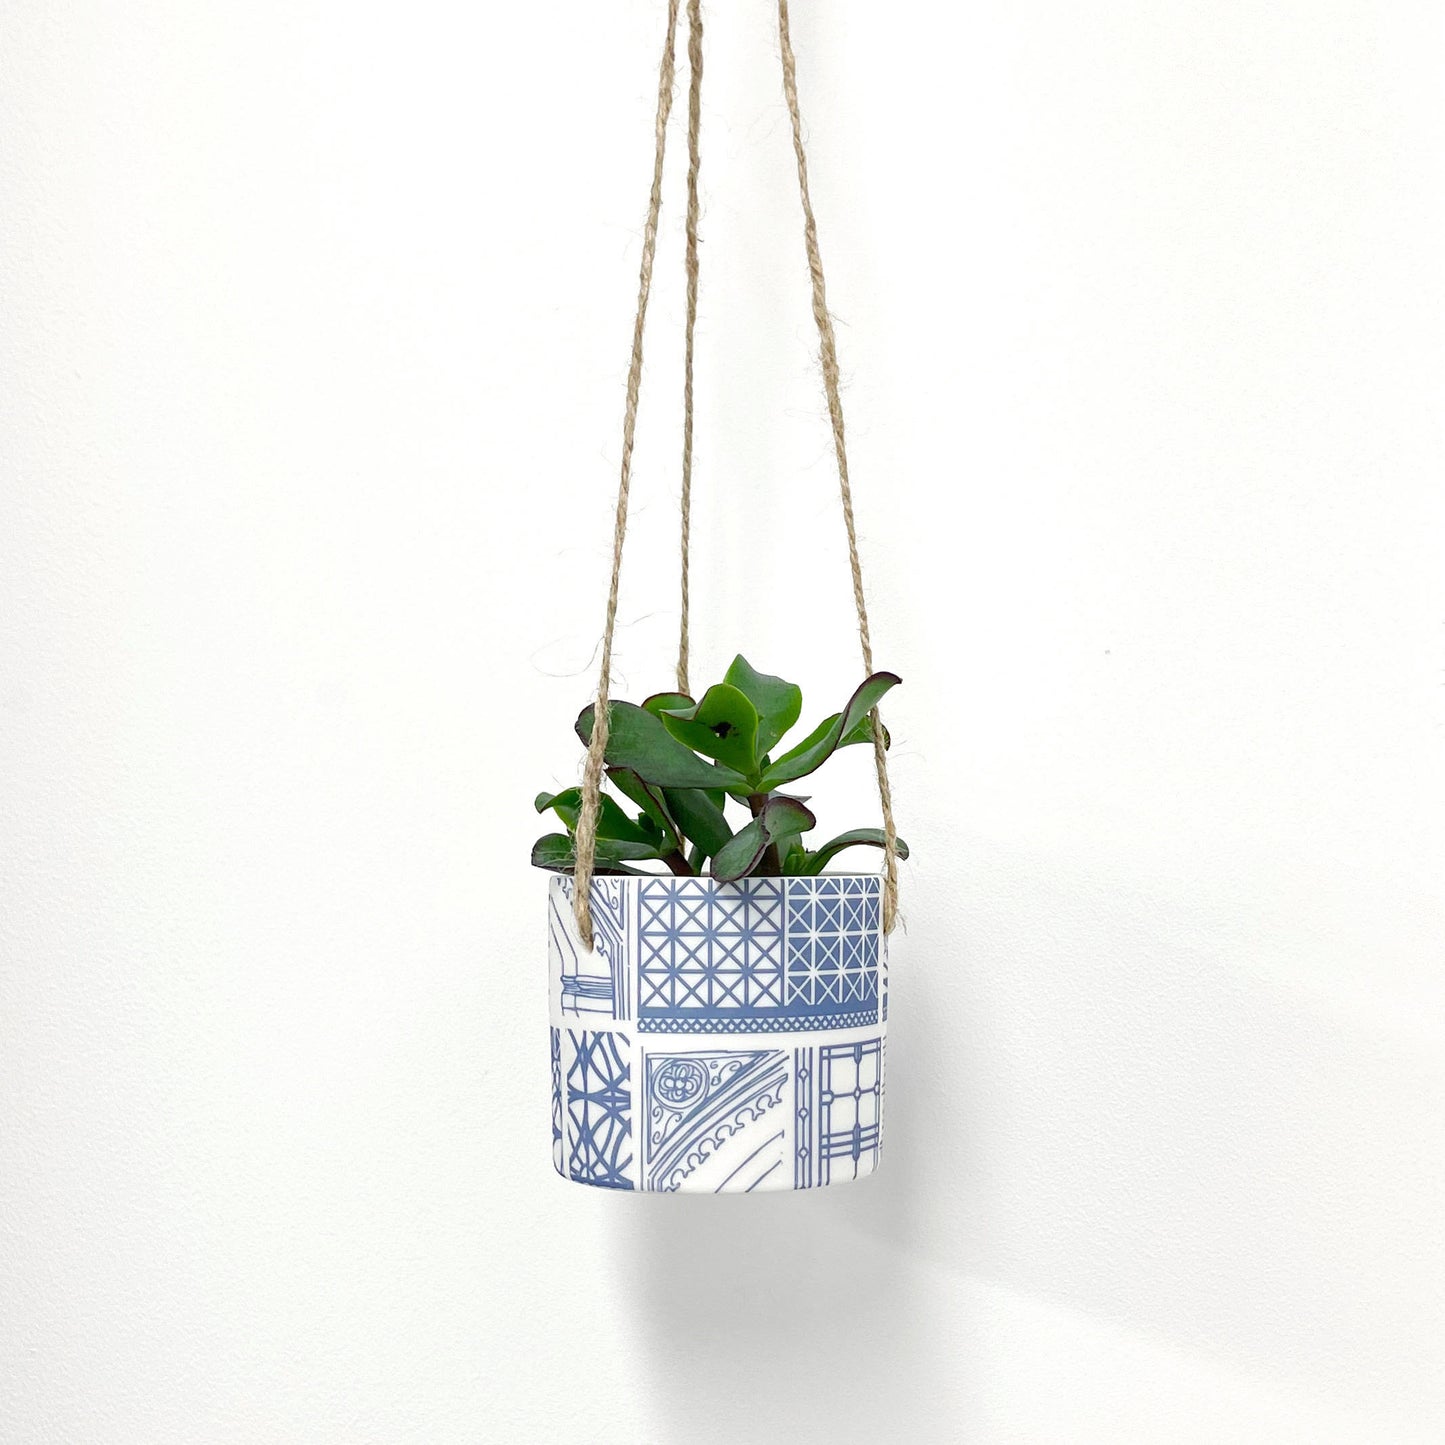 Hanging Planter Pot - Blue Architecture